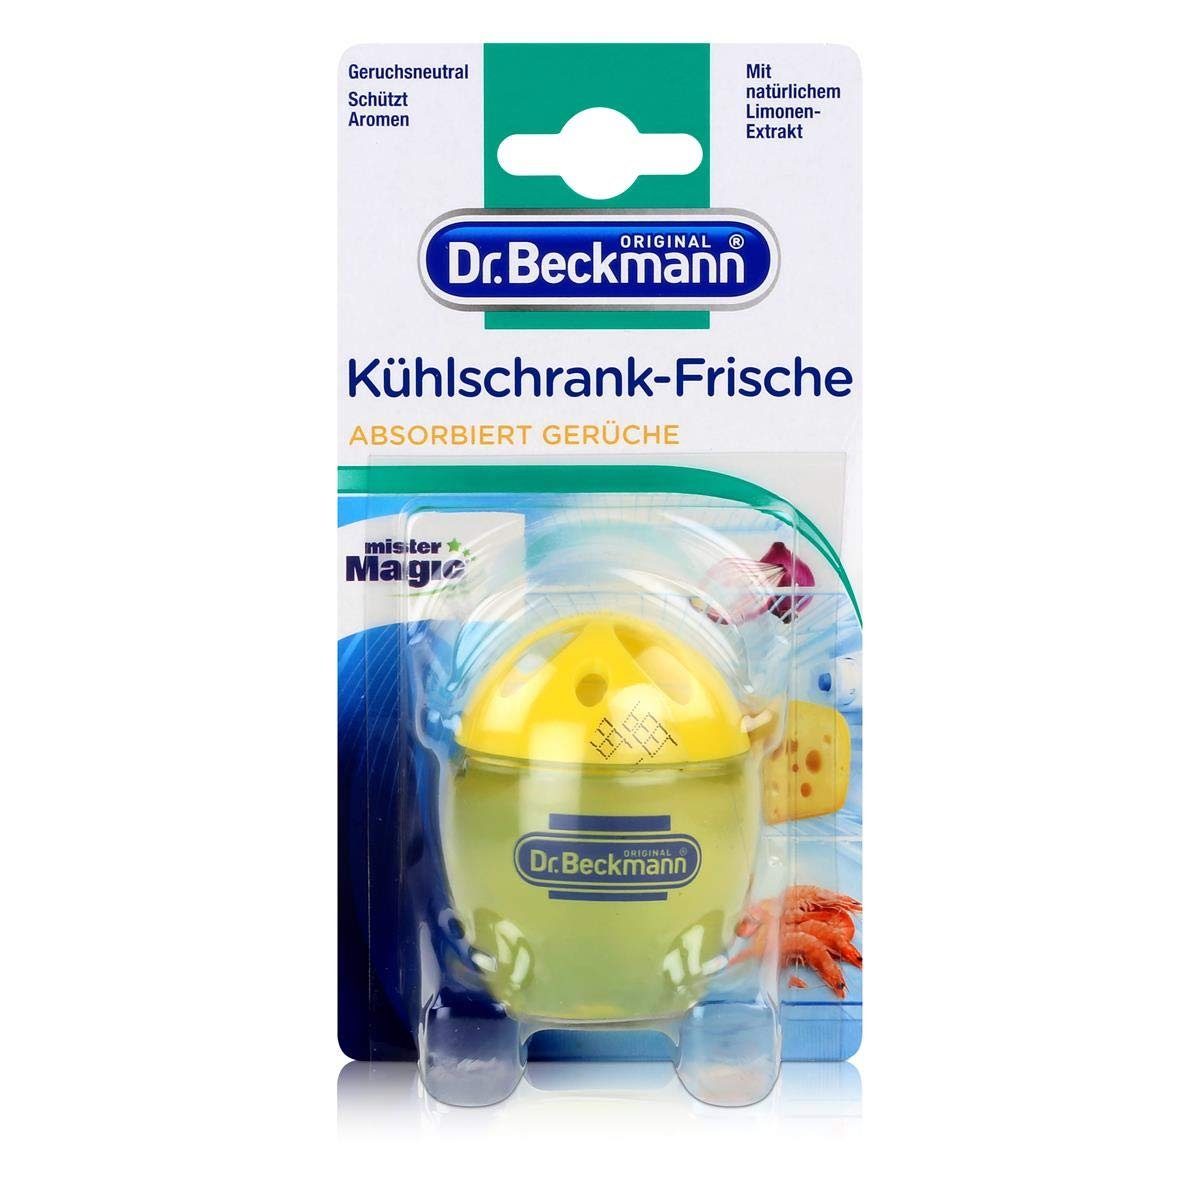 40g Frische Beckmann Kühlschrank Dr.Beckmann Ei Zettelkasten Dr. 4832 Limonen-Extrakt